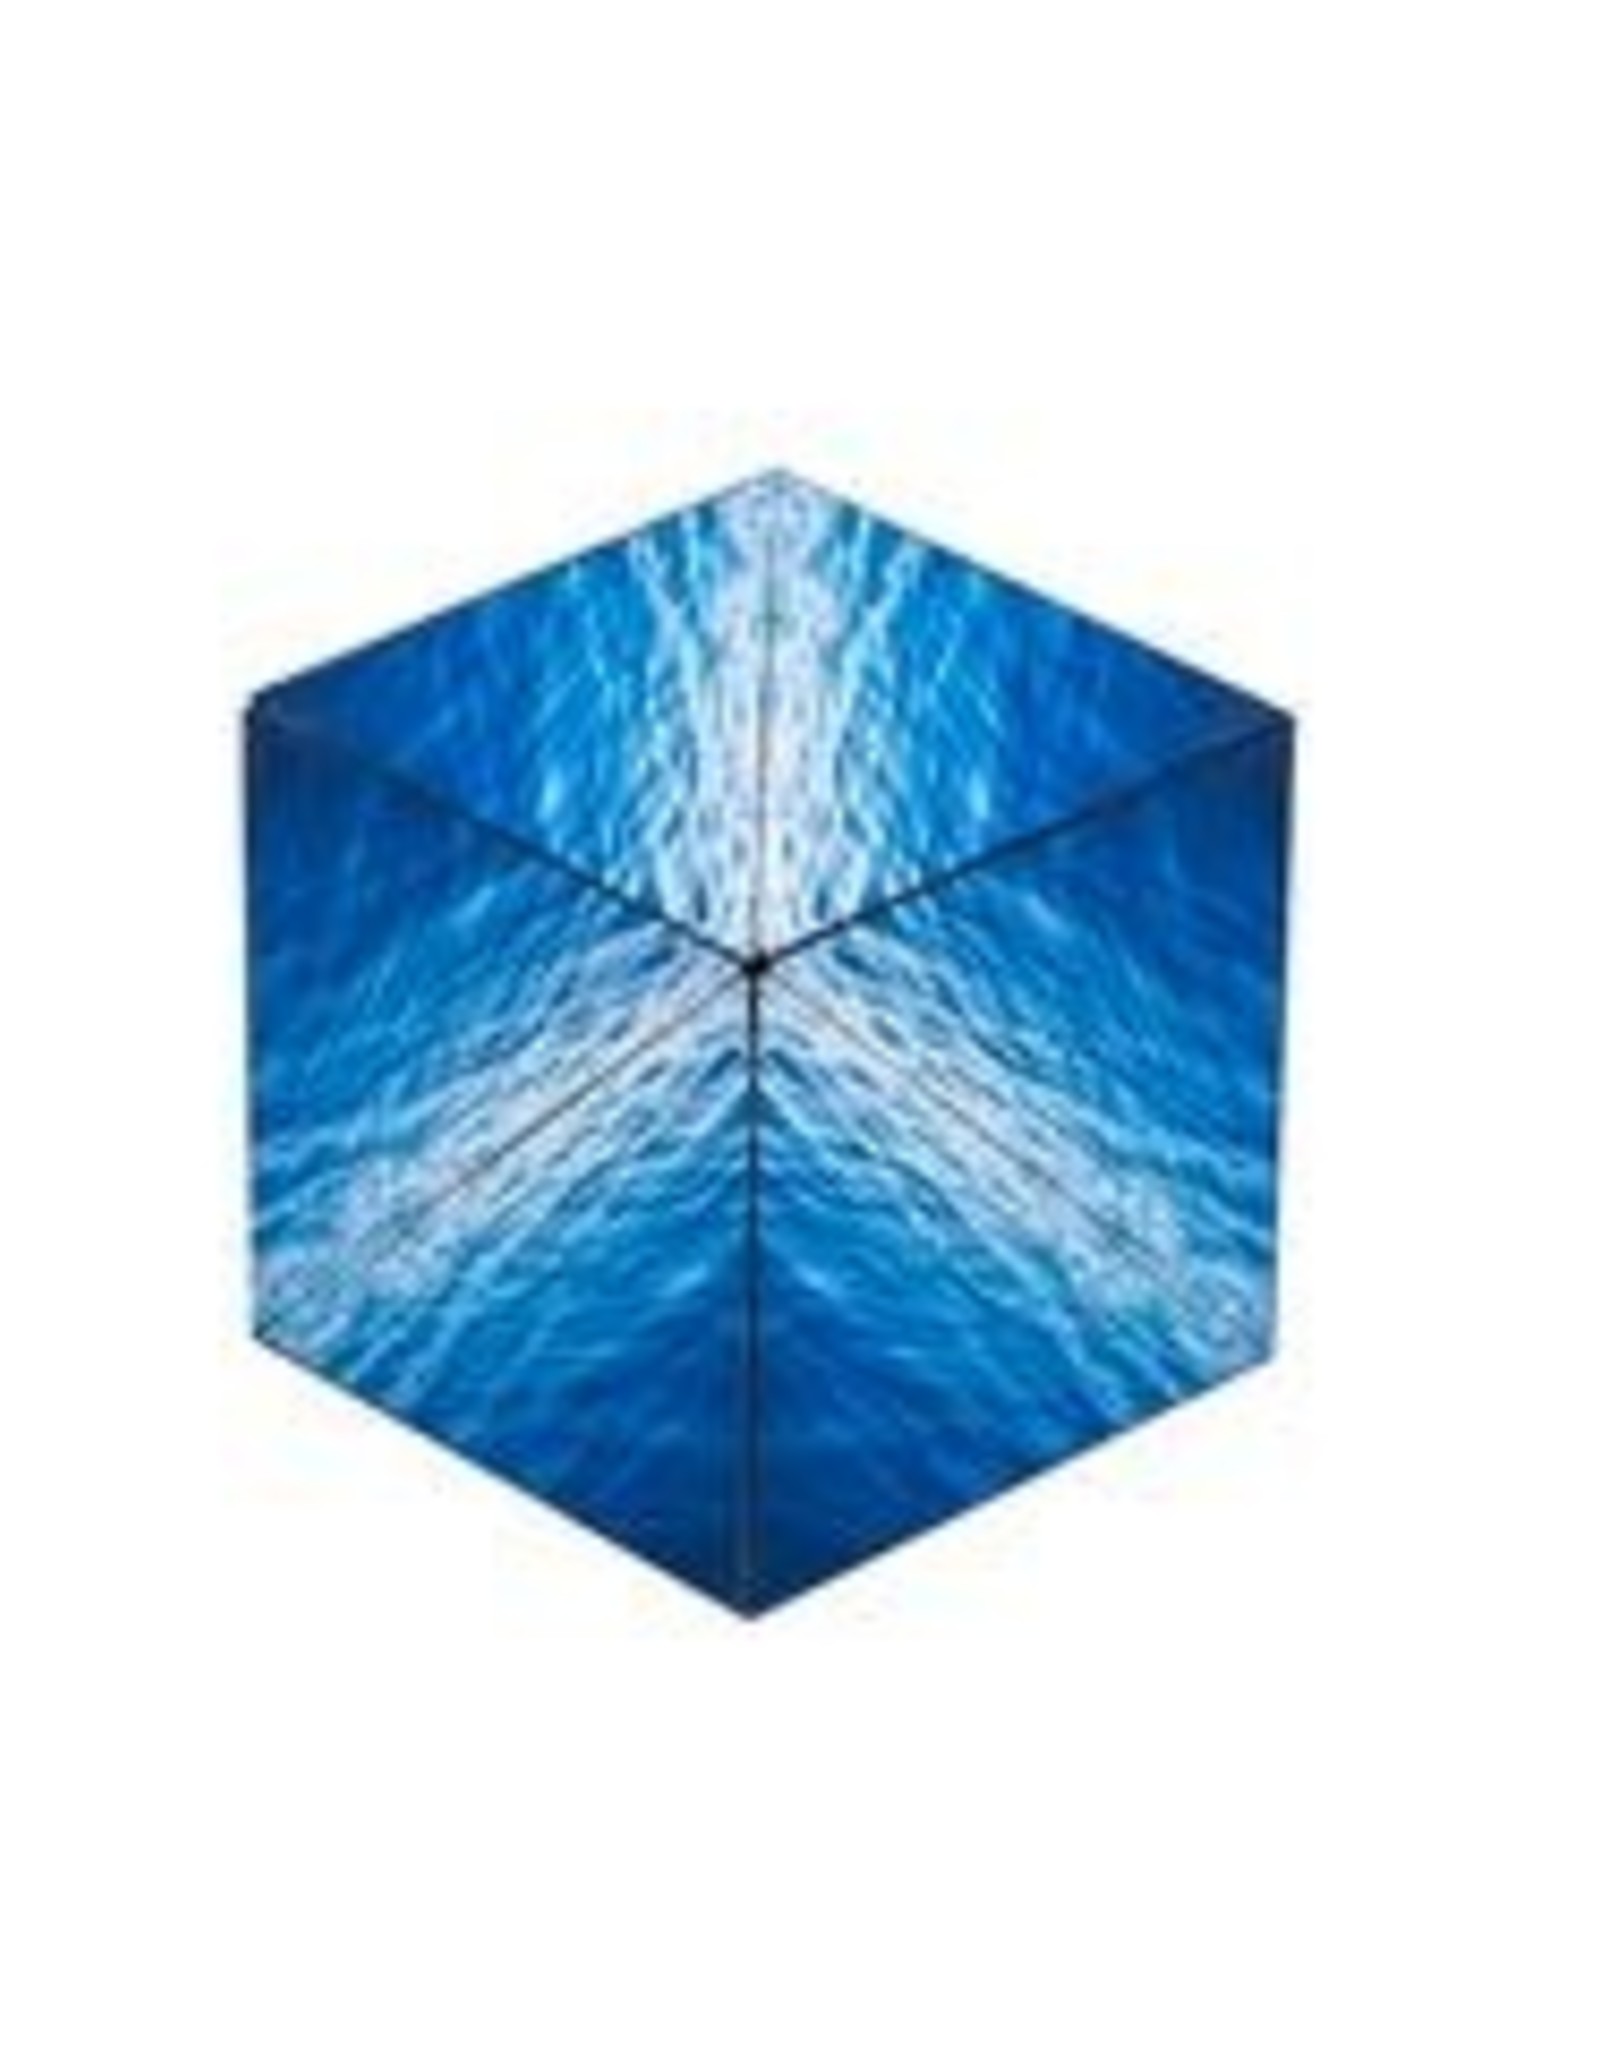 Shashibo Cube Blue Planet